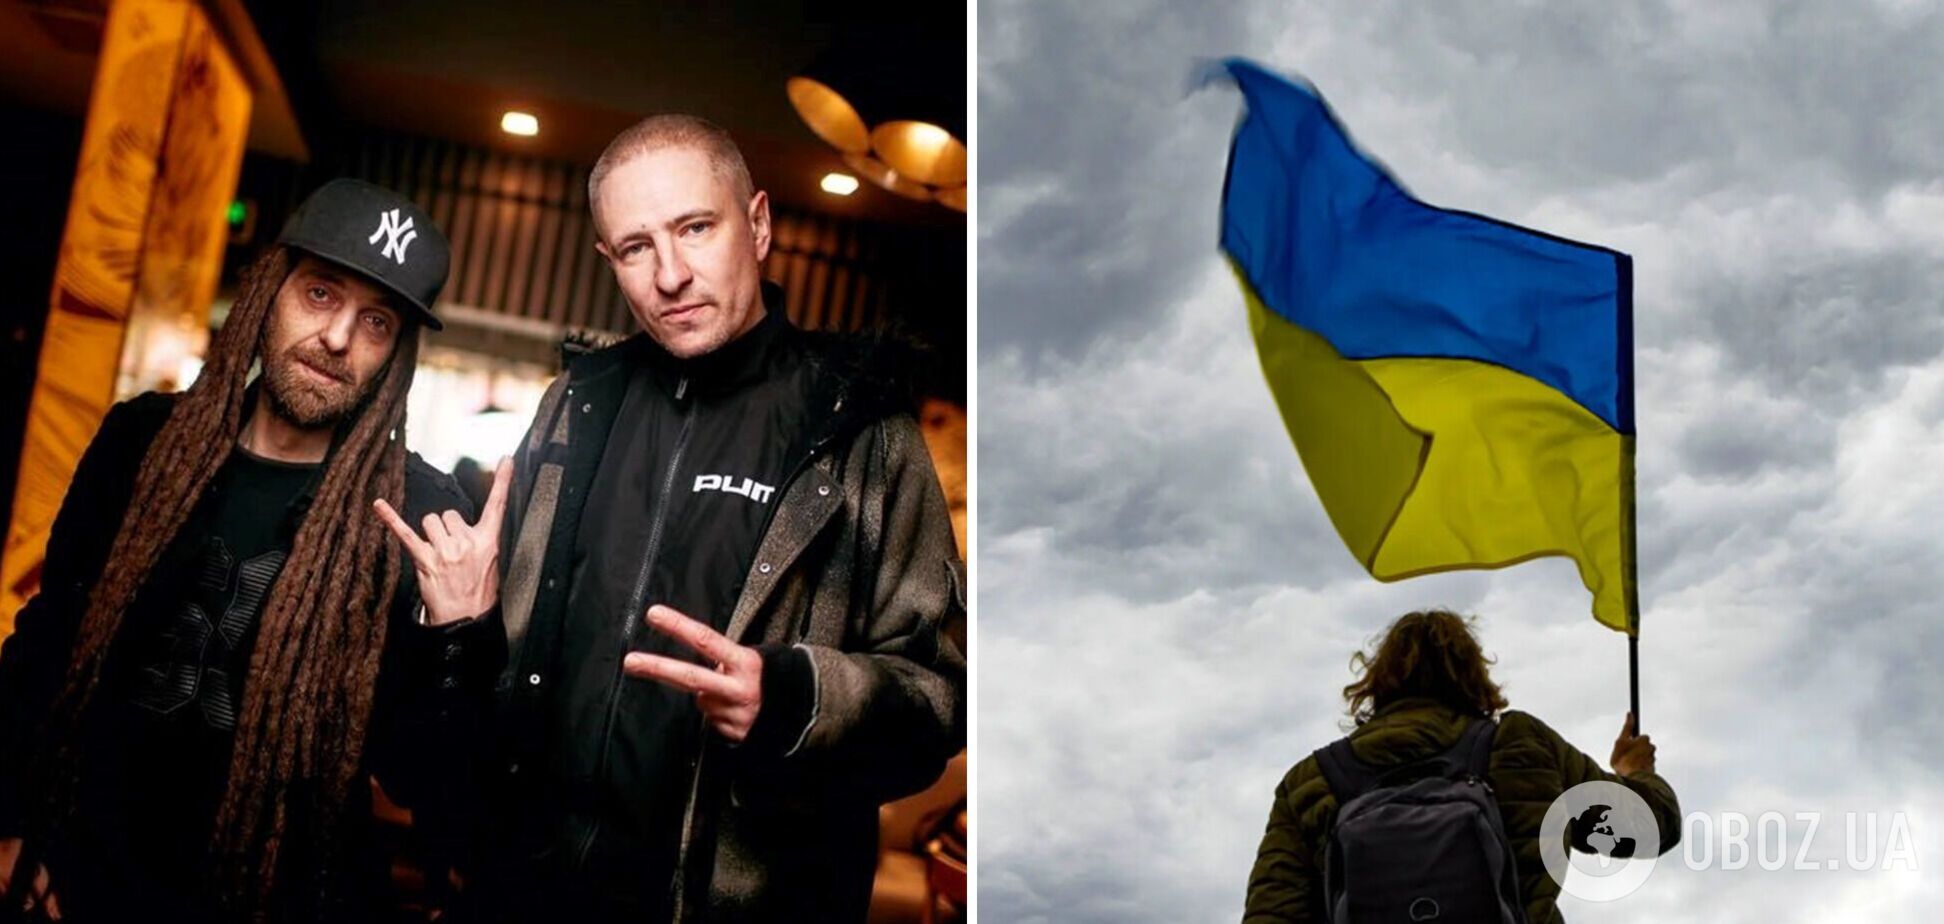 Хотел вынести флаг Украины: Мурик из Green Grey рассказал о планах поехать в Россию